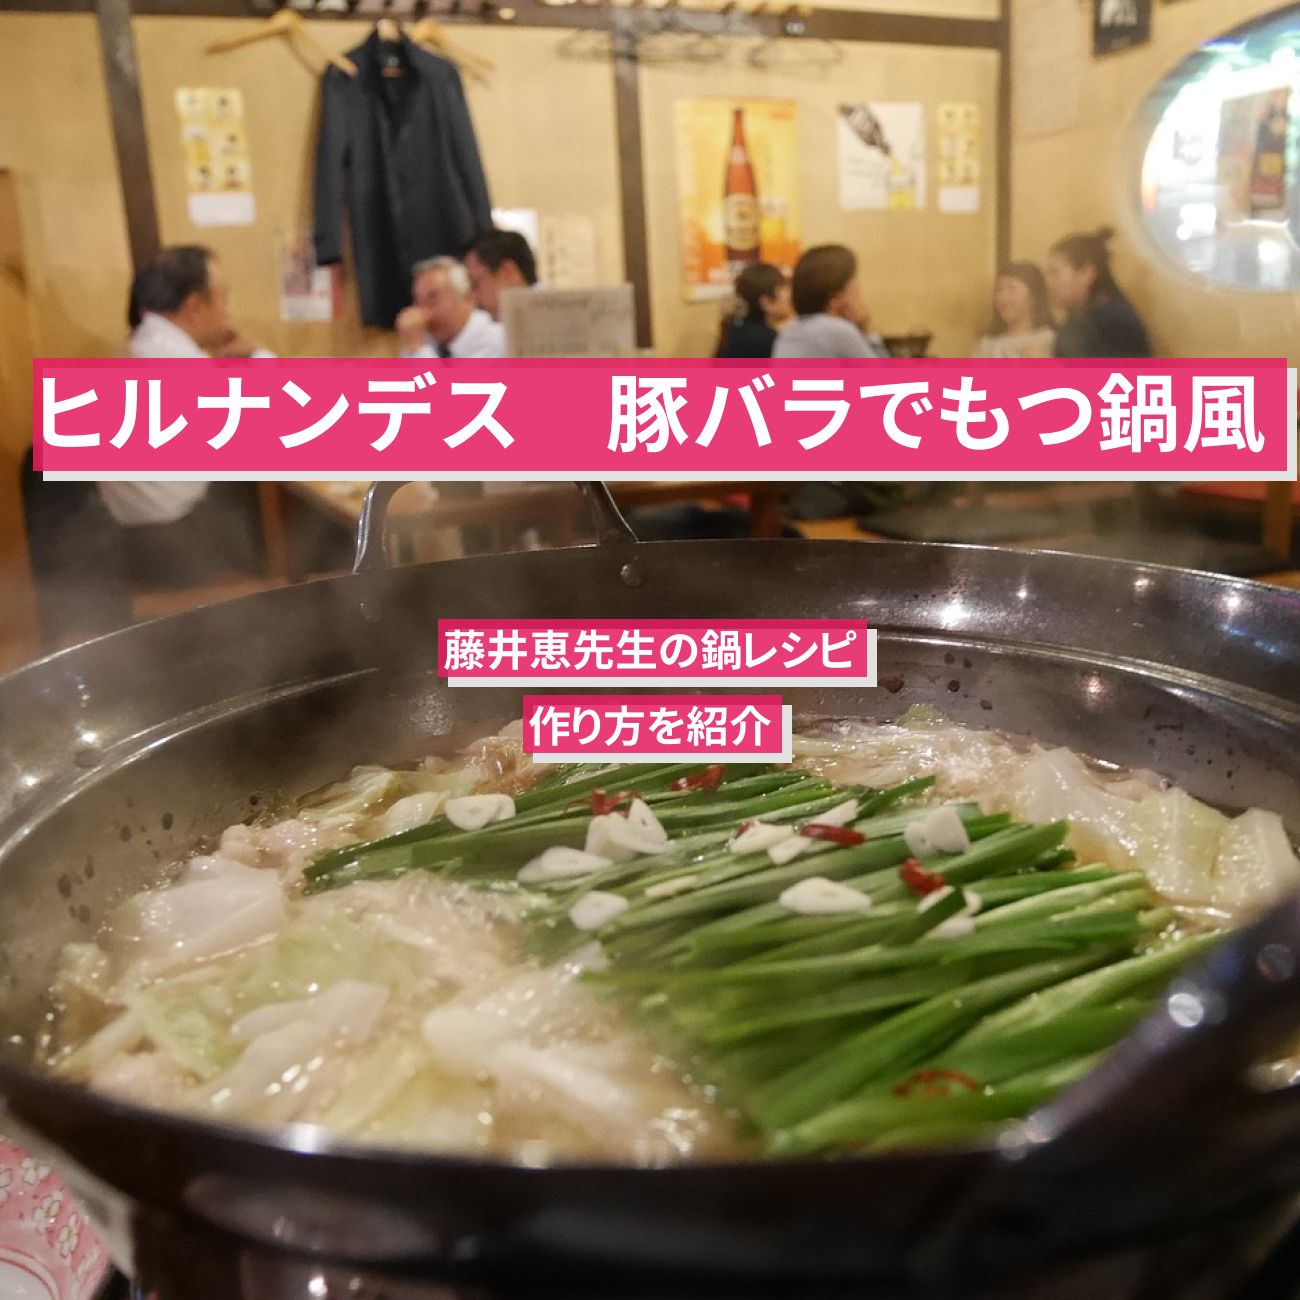 【ヒルナンデス】『豚バラでもつ鍋風』藤井恵先生の鍋レシピ・作り方を紹介